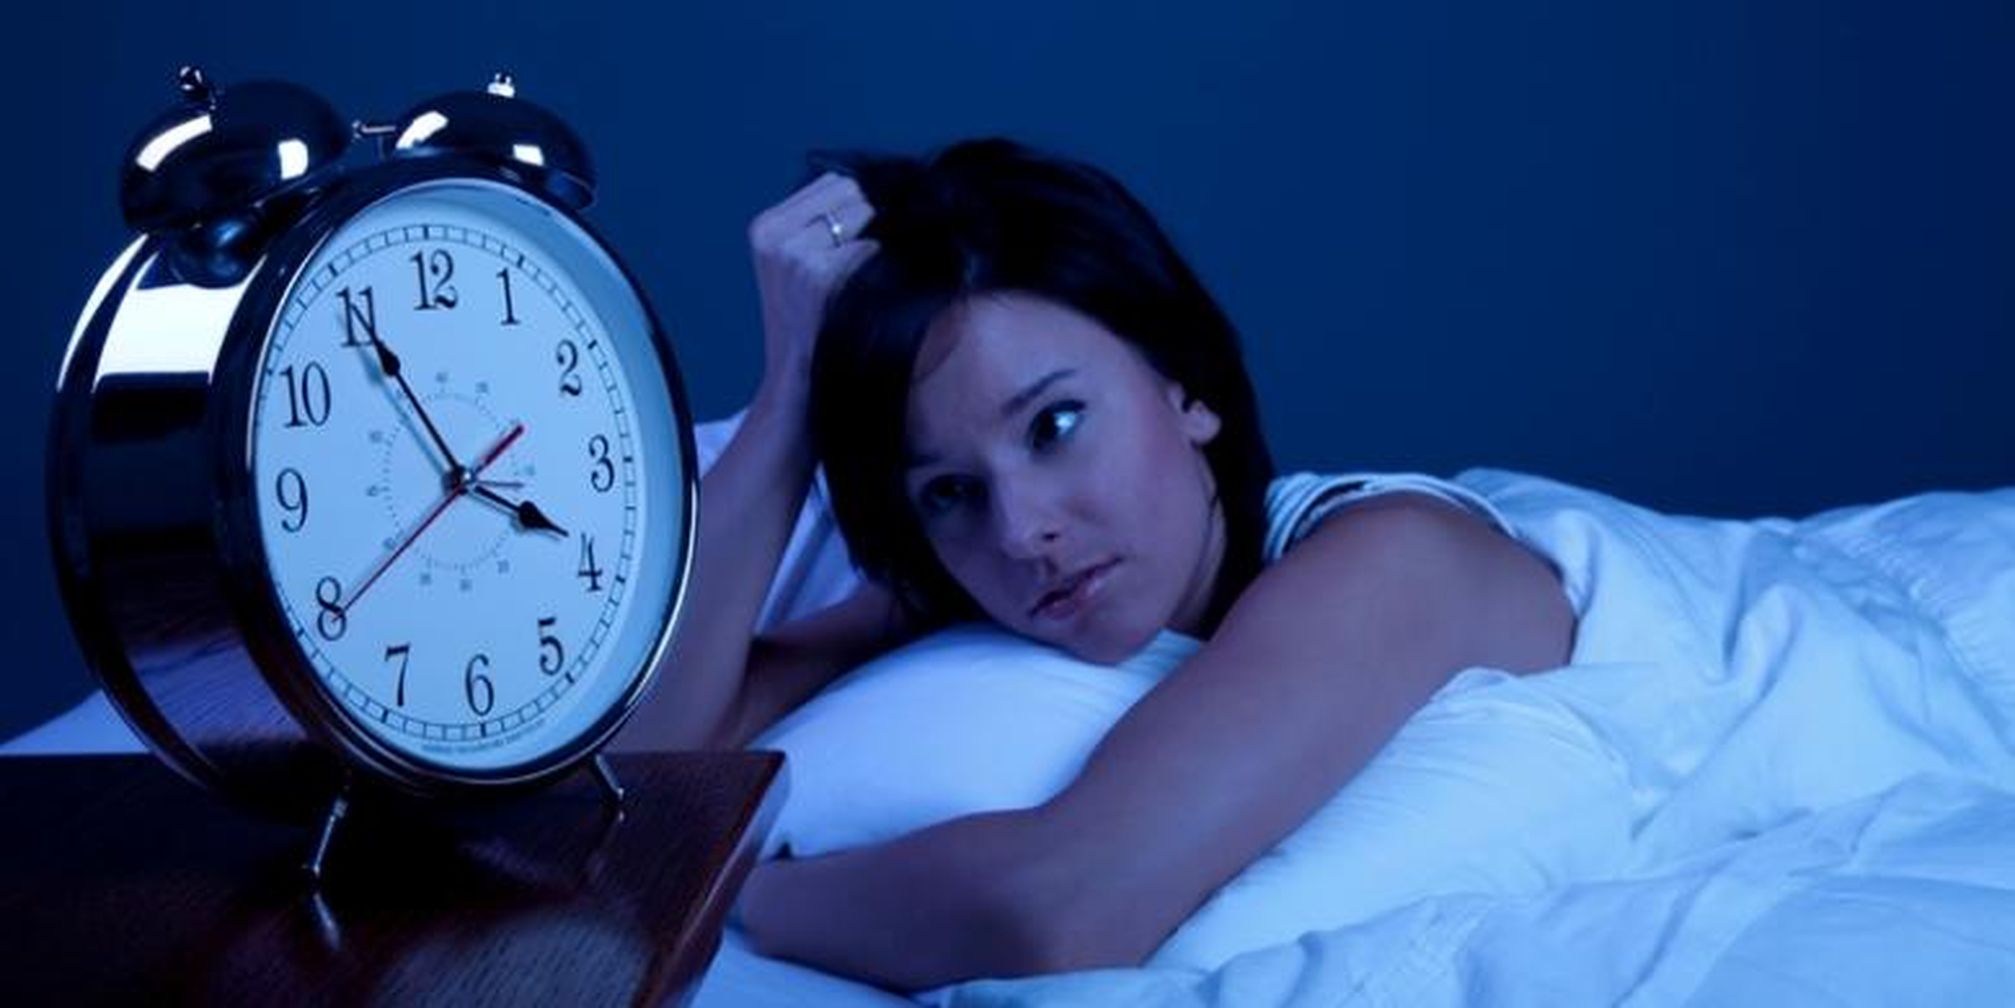 Thức quả khuya ảnh hưởng đến cơ thể bạn